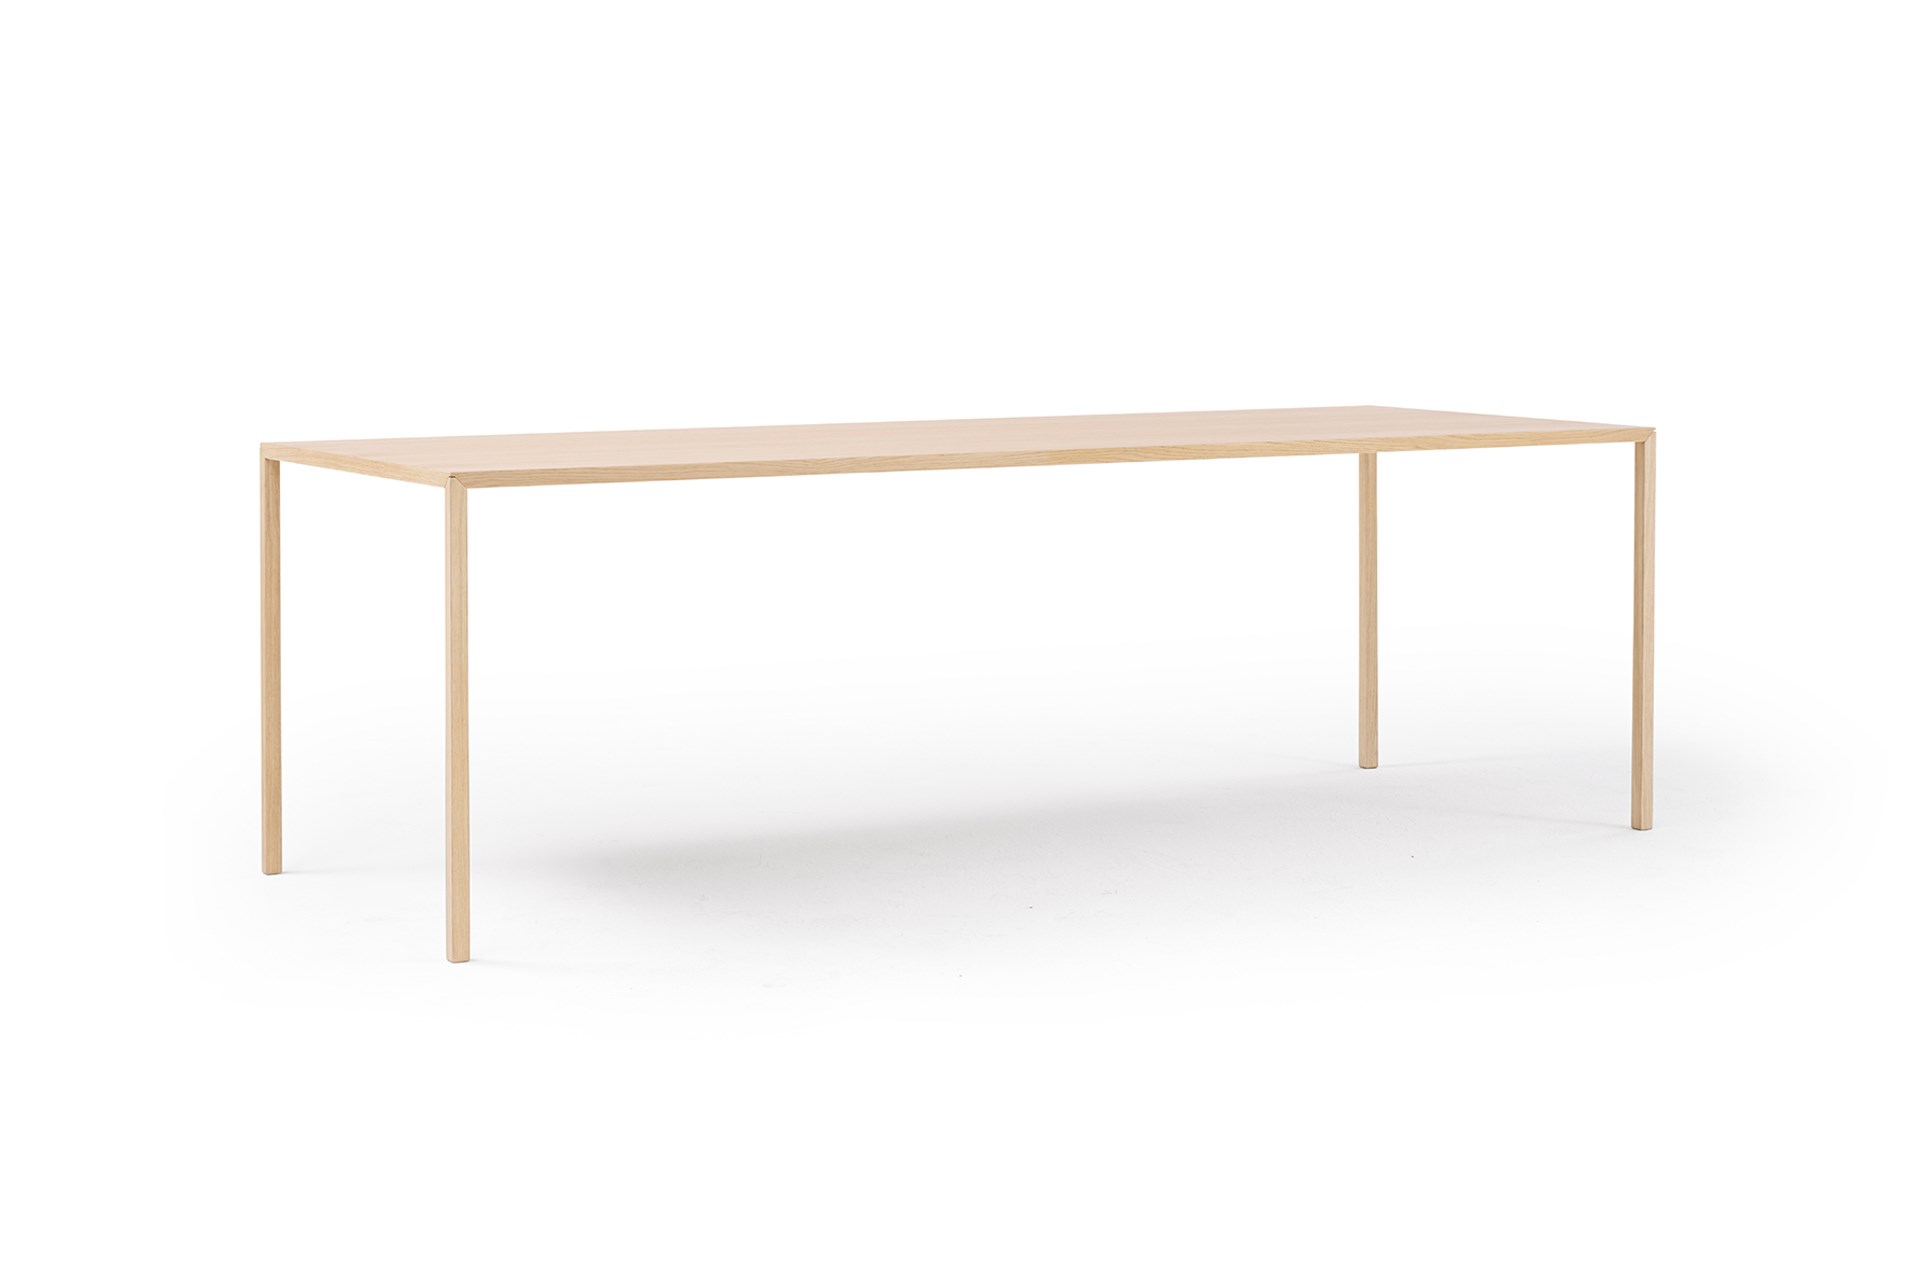 Rustikaler Heizkörper Konsole Slimline Tisch mit weißen HaarnadelBeinen  Behandelter Holzstil Massivholz Möbel 14,4CM X 4,4CM - .de